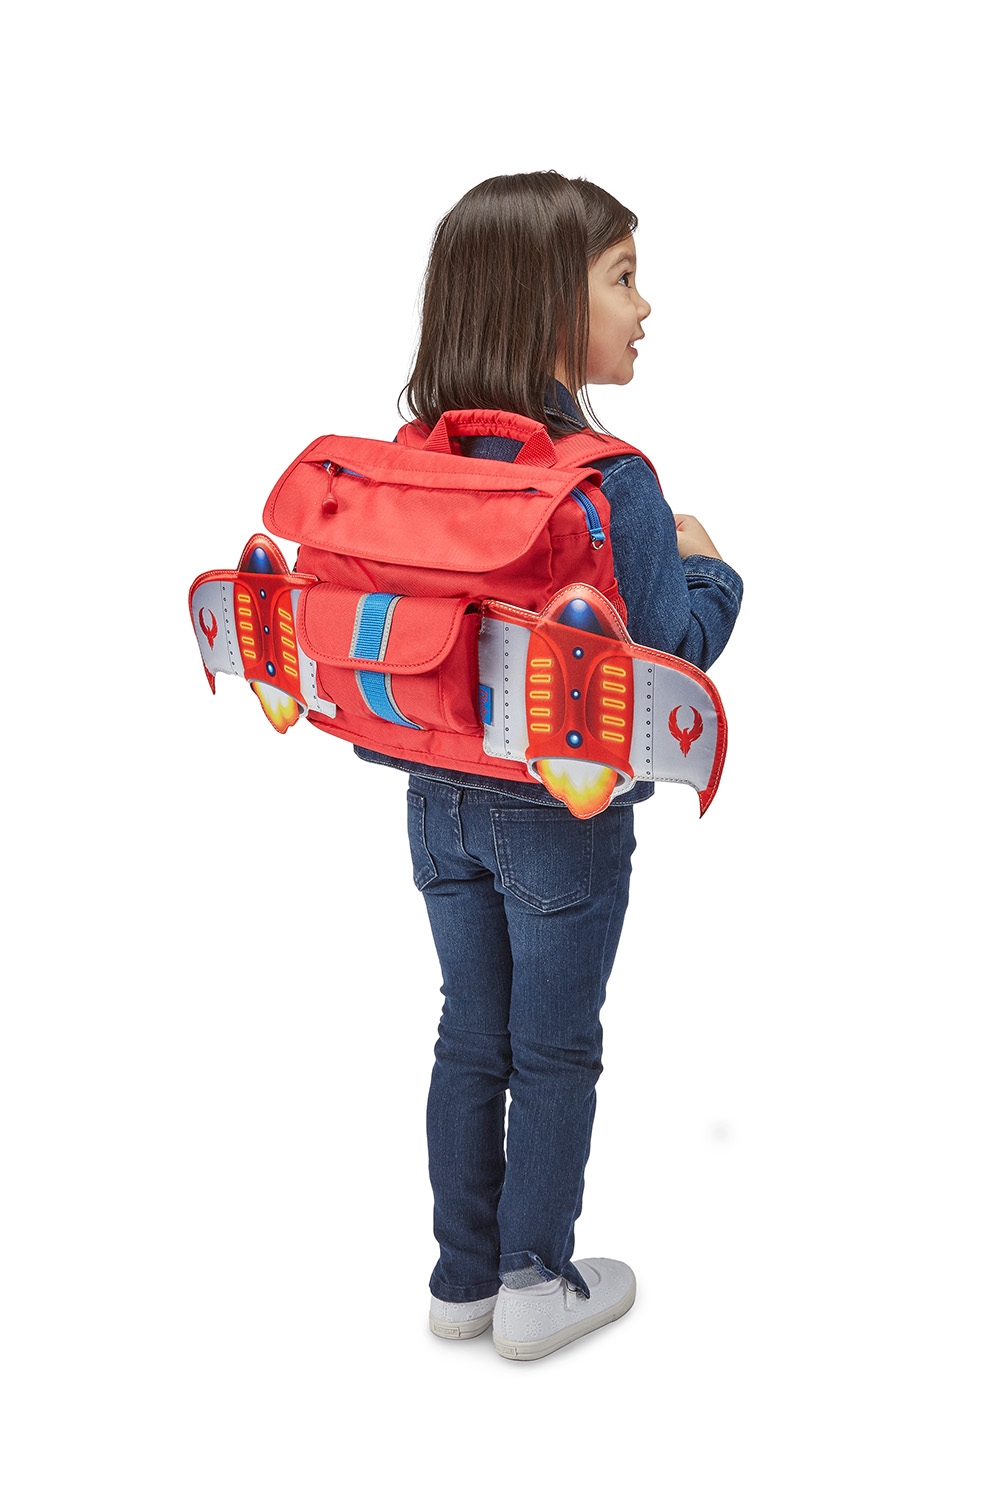 【美國Bixbee】飛飛童趣系列小童背包 (3款可選)